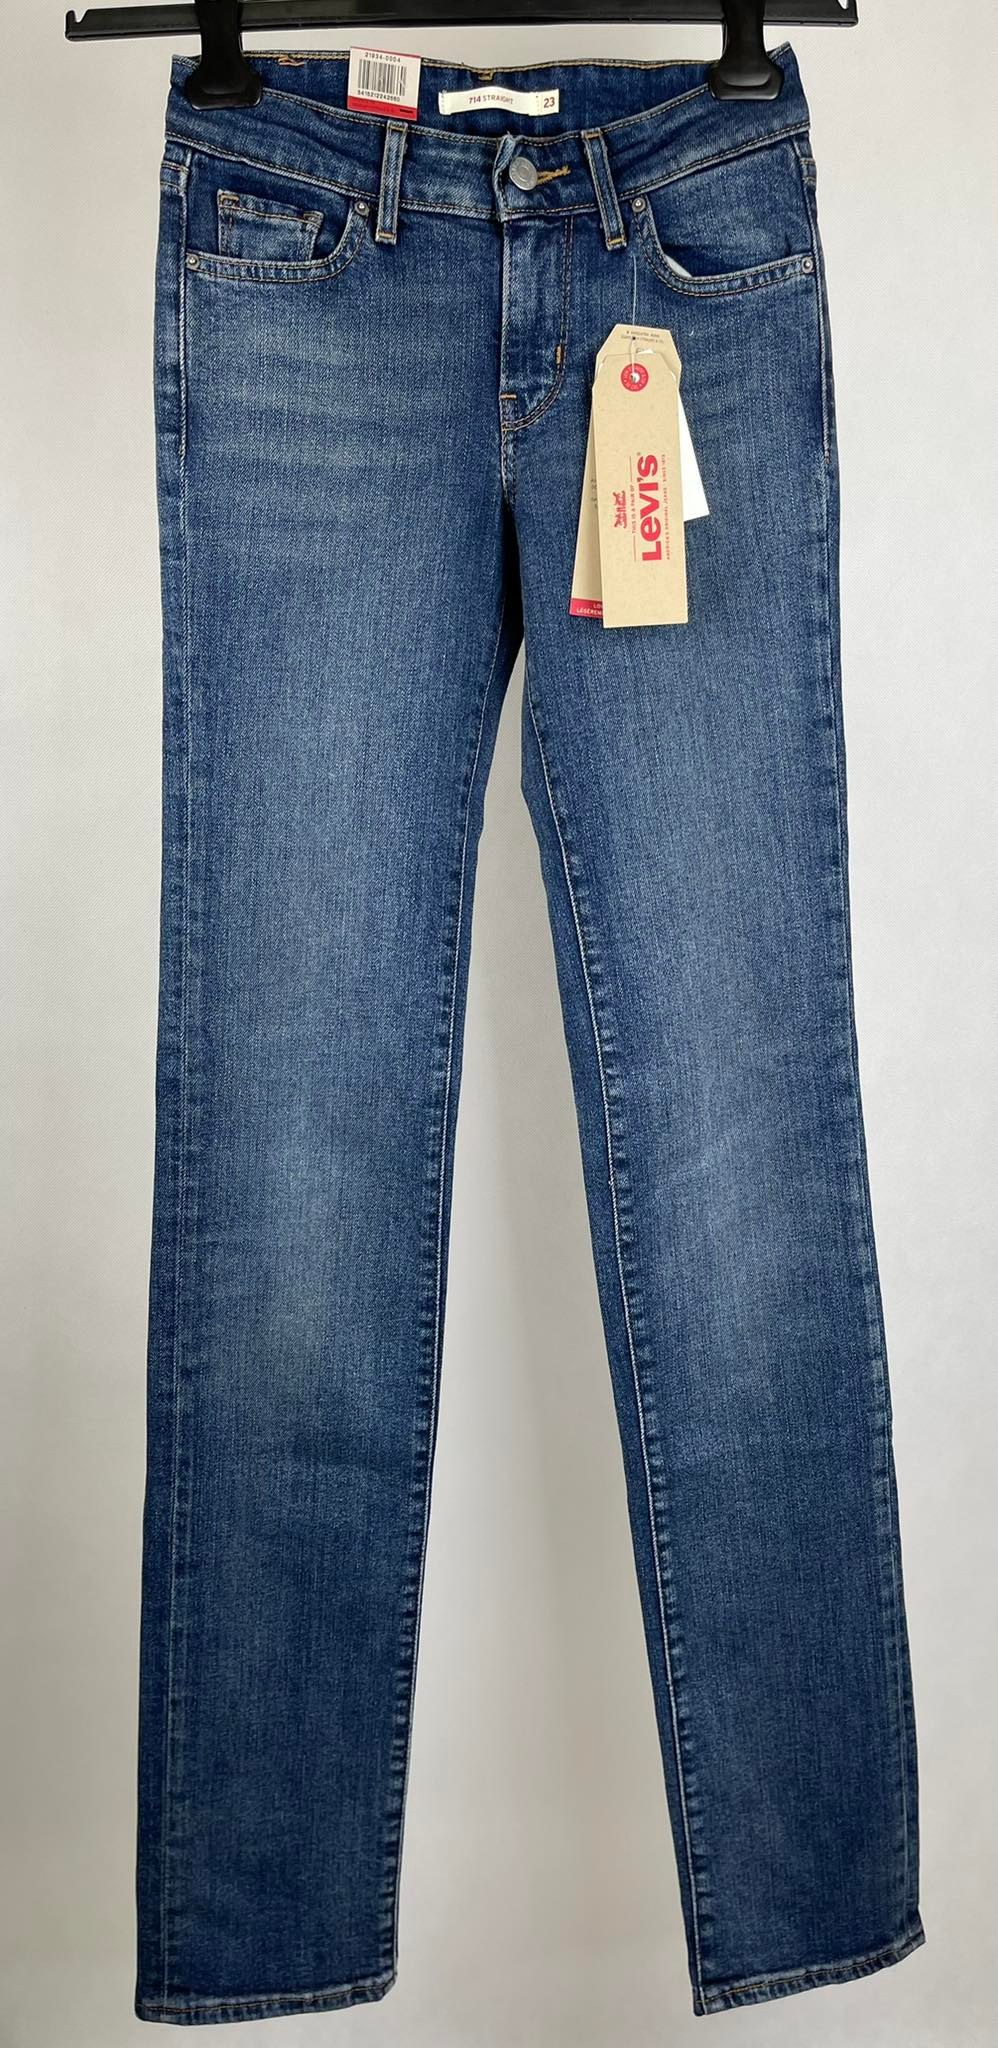 Spodnie damskie jeansowe Levi's - Fitting Room